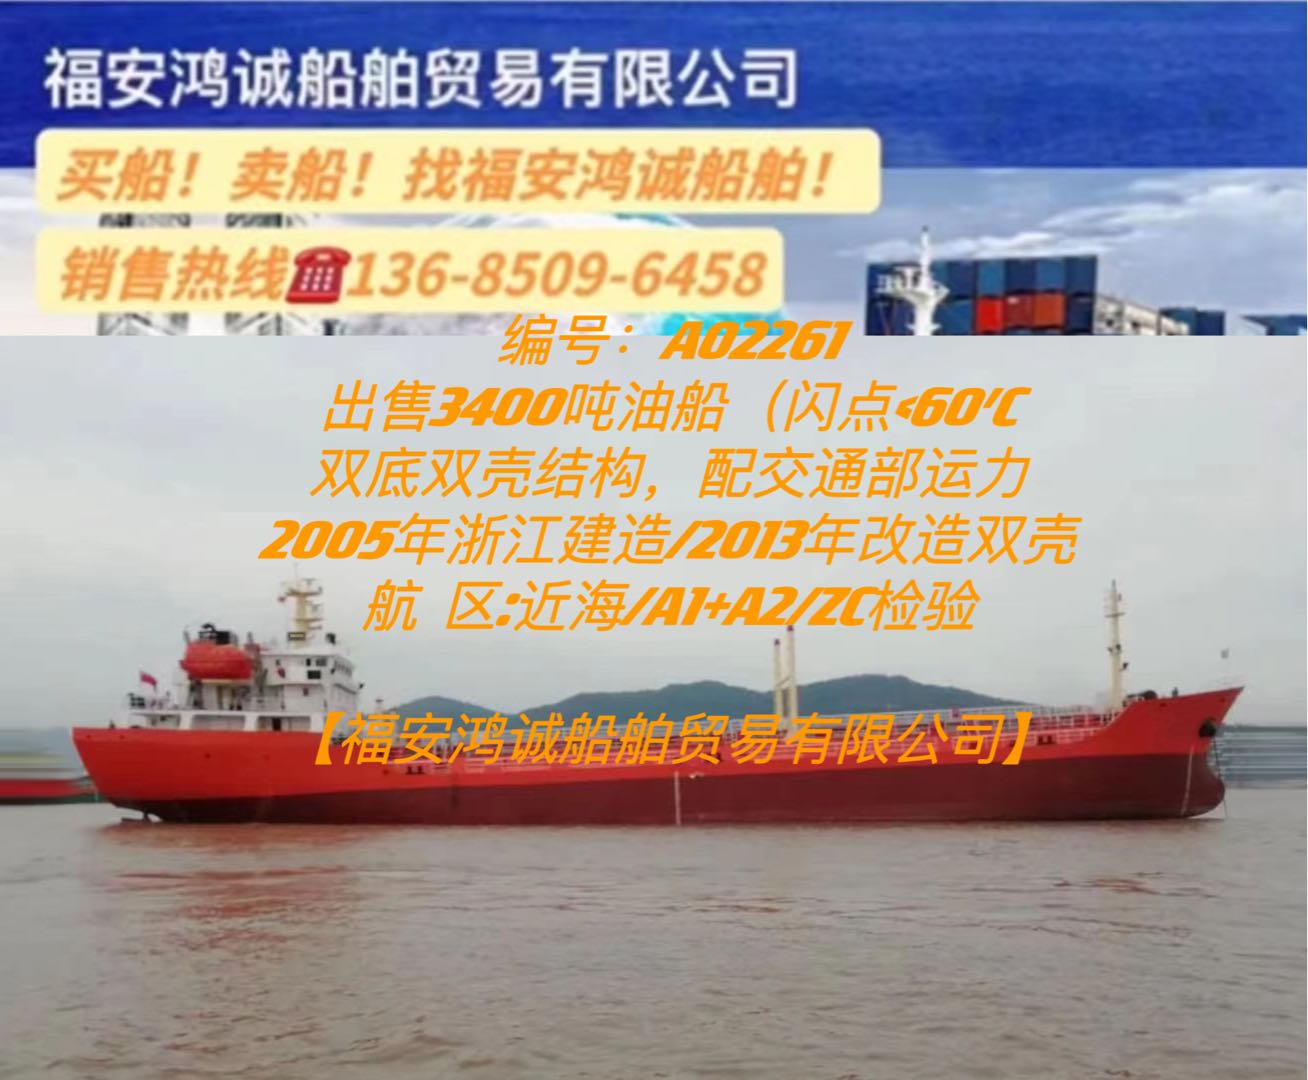 出售05年3400吨双壳油船